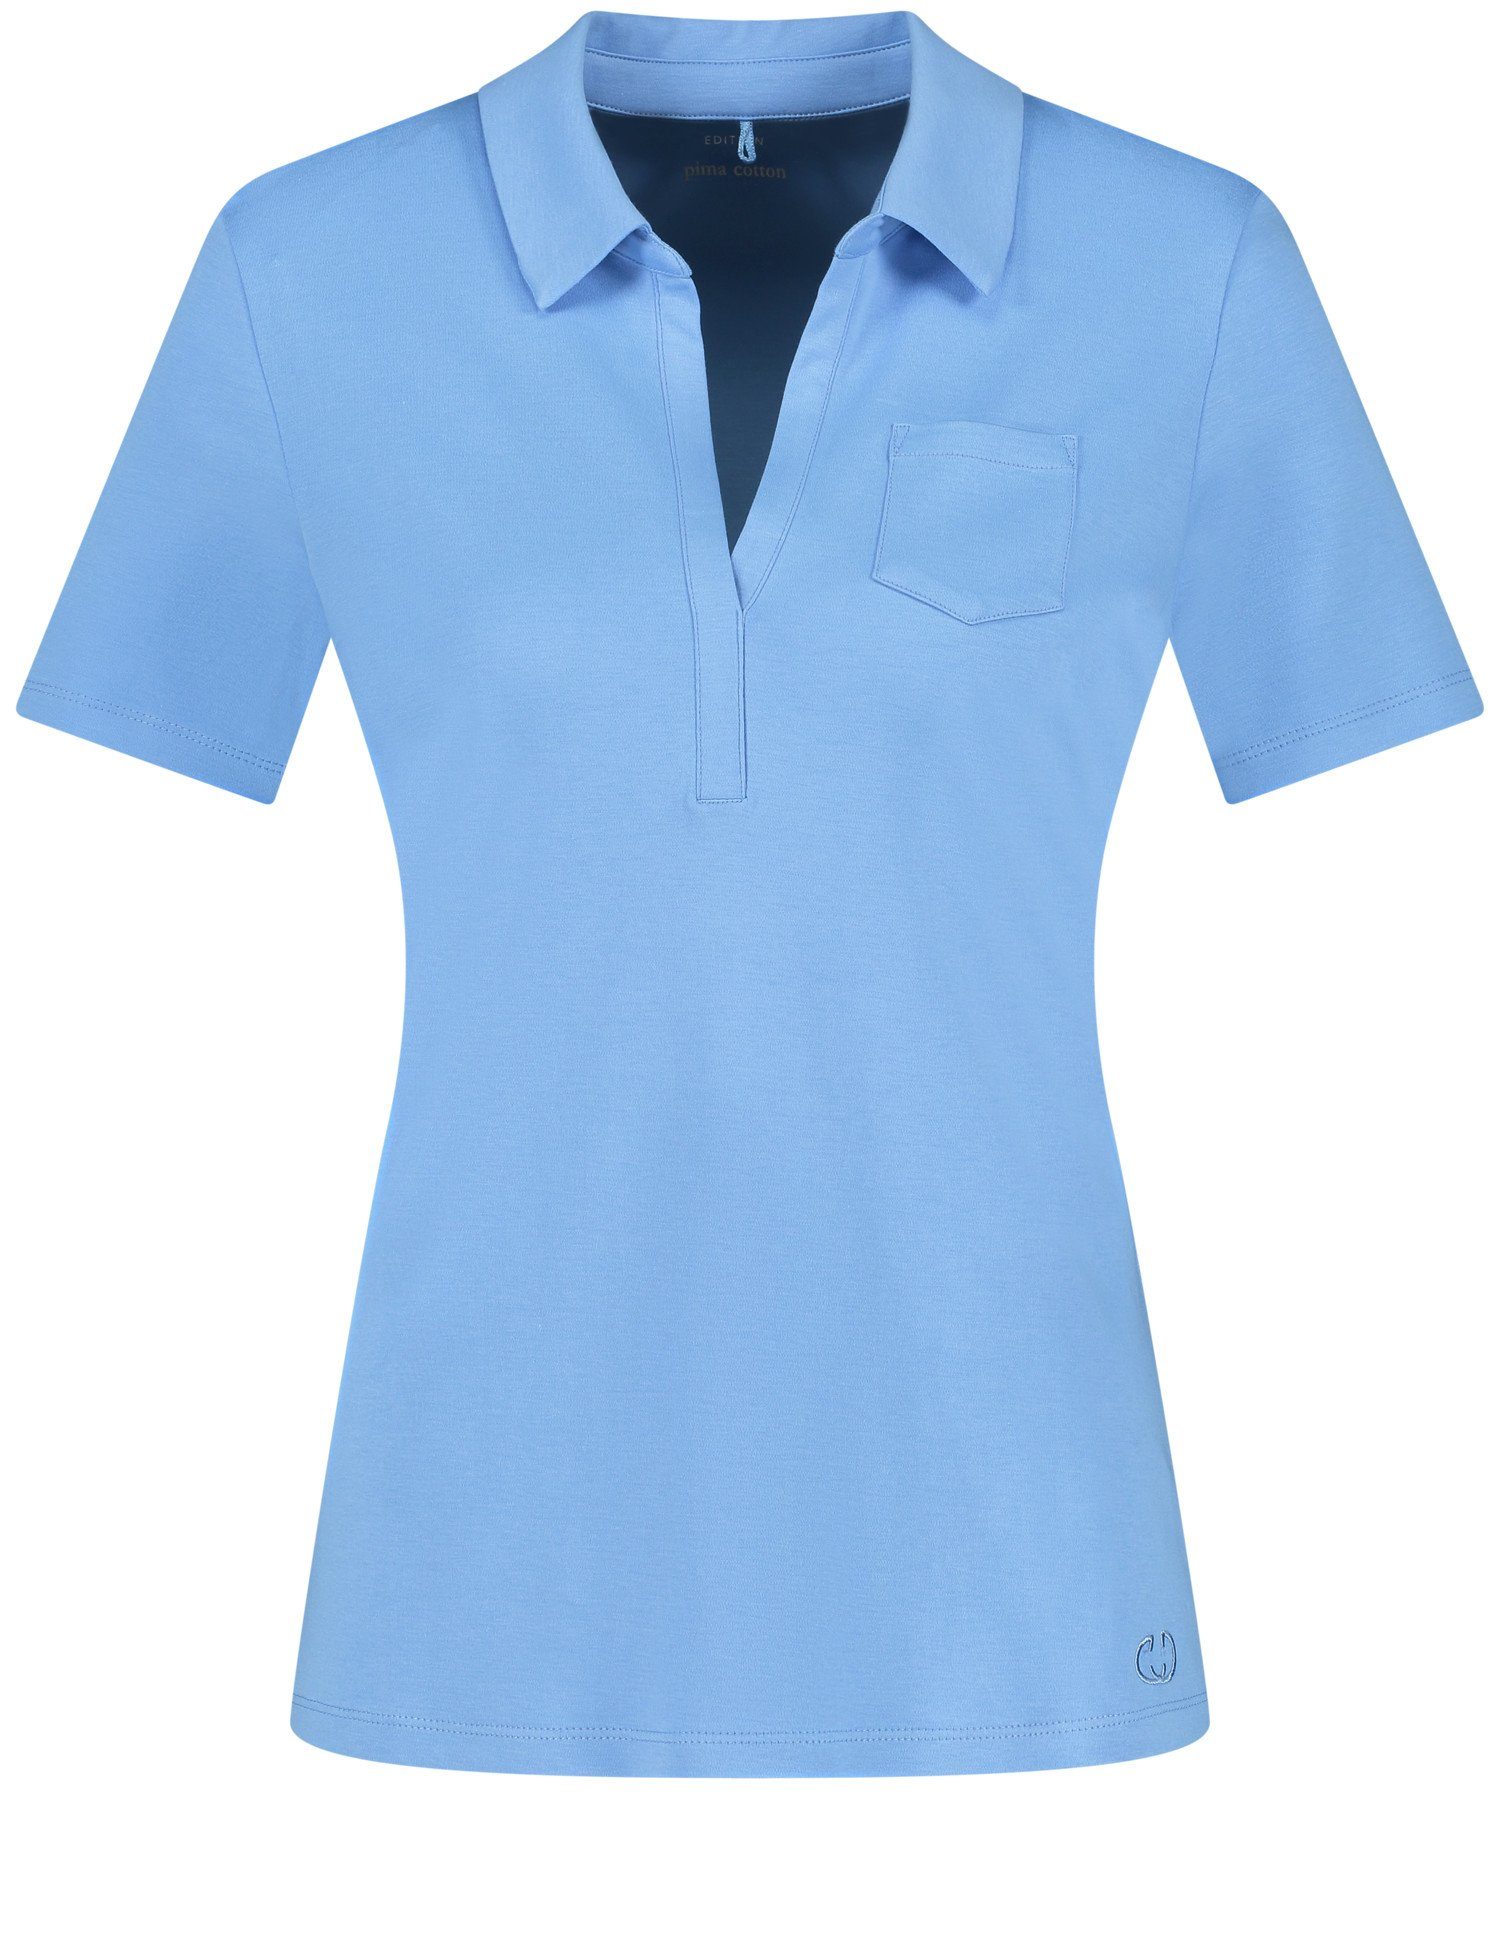 GERRY WEBER Poloshirt Blue Bright Kurzarm Poloshirt